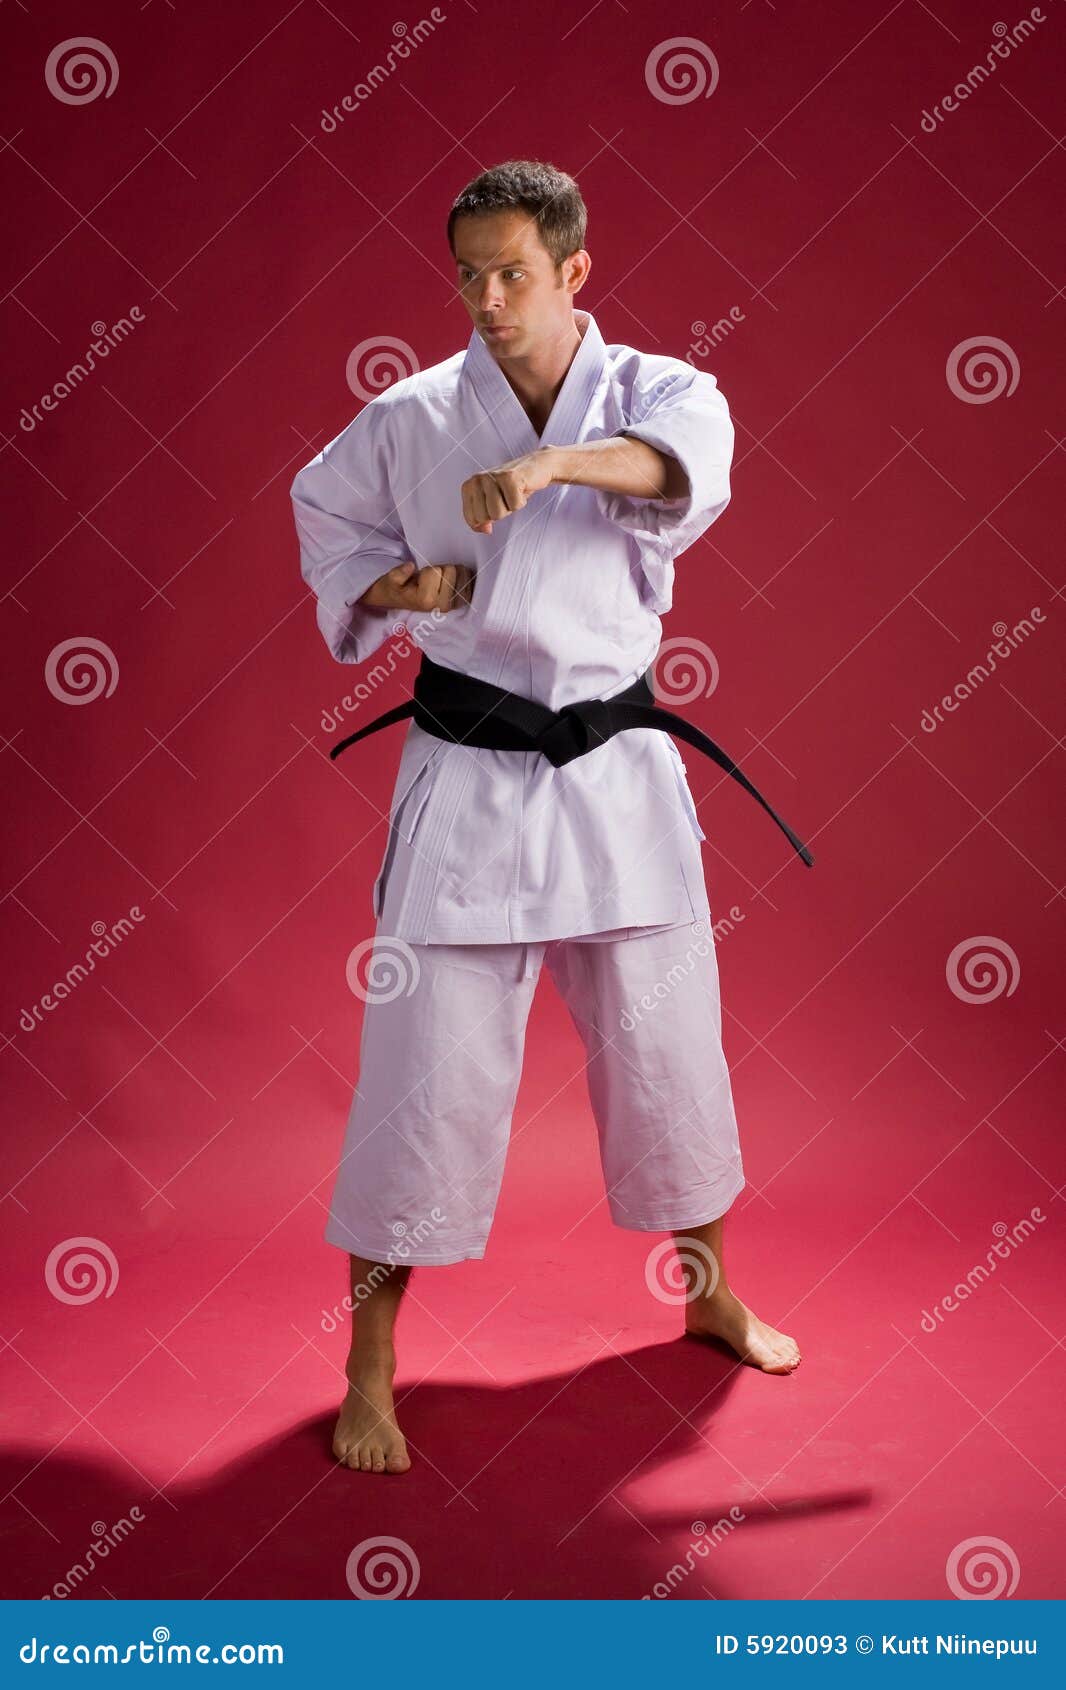 Karate Man Stock Photos - Image: 5920093